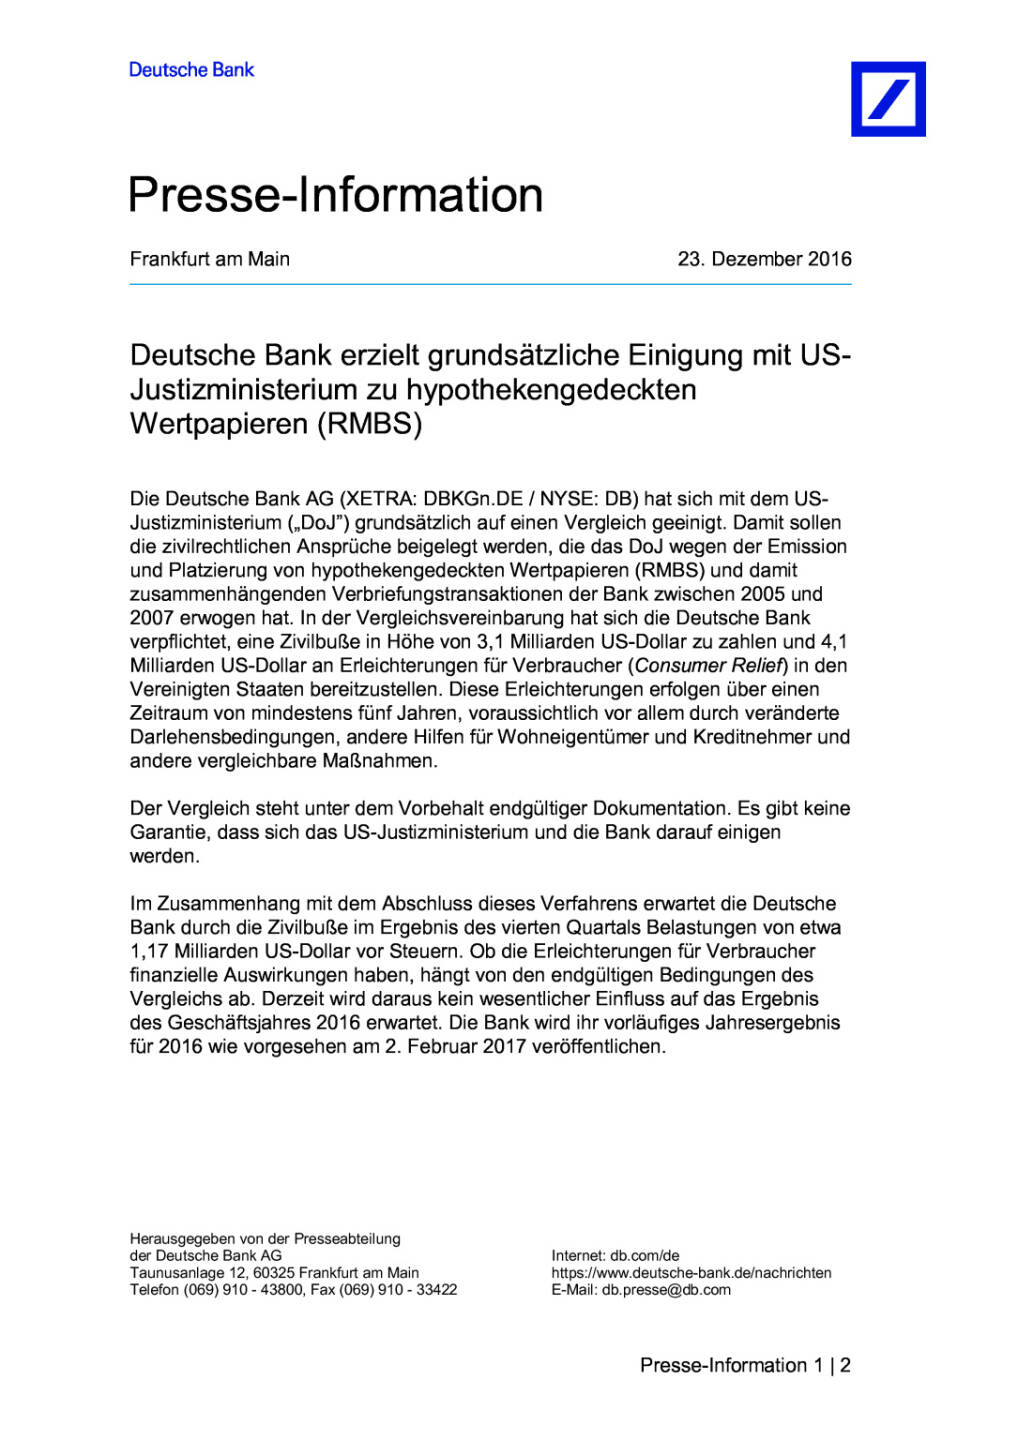 Deutsche Bank erzielt grundsätzliche Einigung mit US-Justizministerium, Seite 1/2, komplettes Dokument unter http://boerse-social.com/static/uploads/file_2040_deutsche_bank_erzielt_grundsätzliche_einigung_mit_us-_justizministerium.pdf